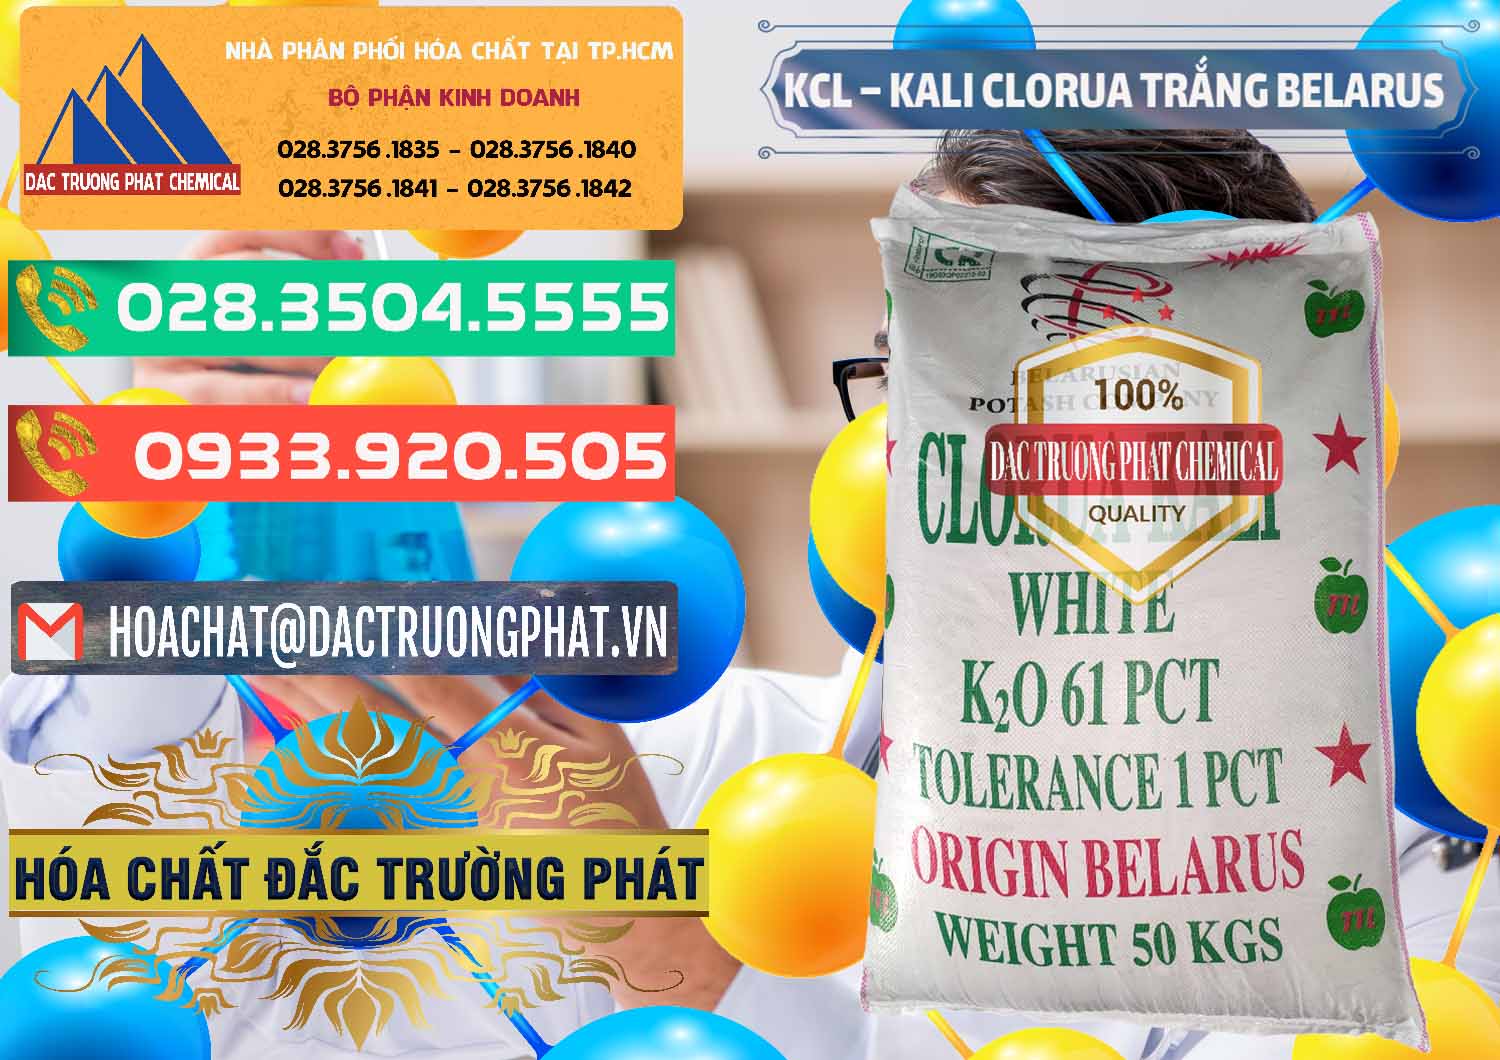 Đơn vị cung ứng ( bán ) KCL – Kali Clorua Trắng Belarus - 0085 - Đơn vị chuyên cung cấp & kinh doanh hóa chất tại TP.HCM - congtyhoachat.com.vn